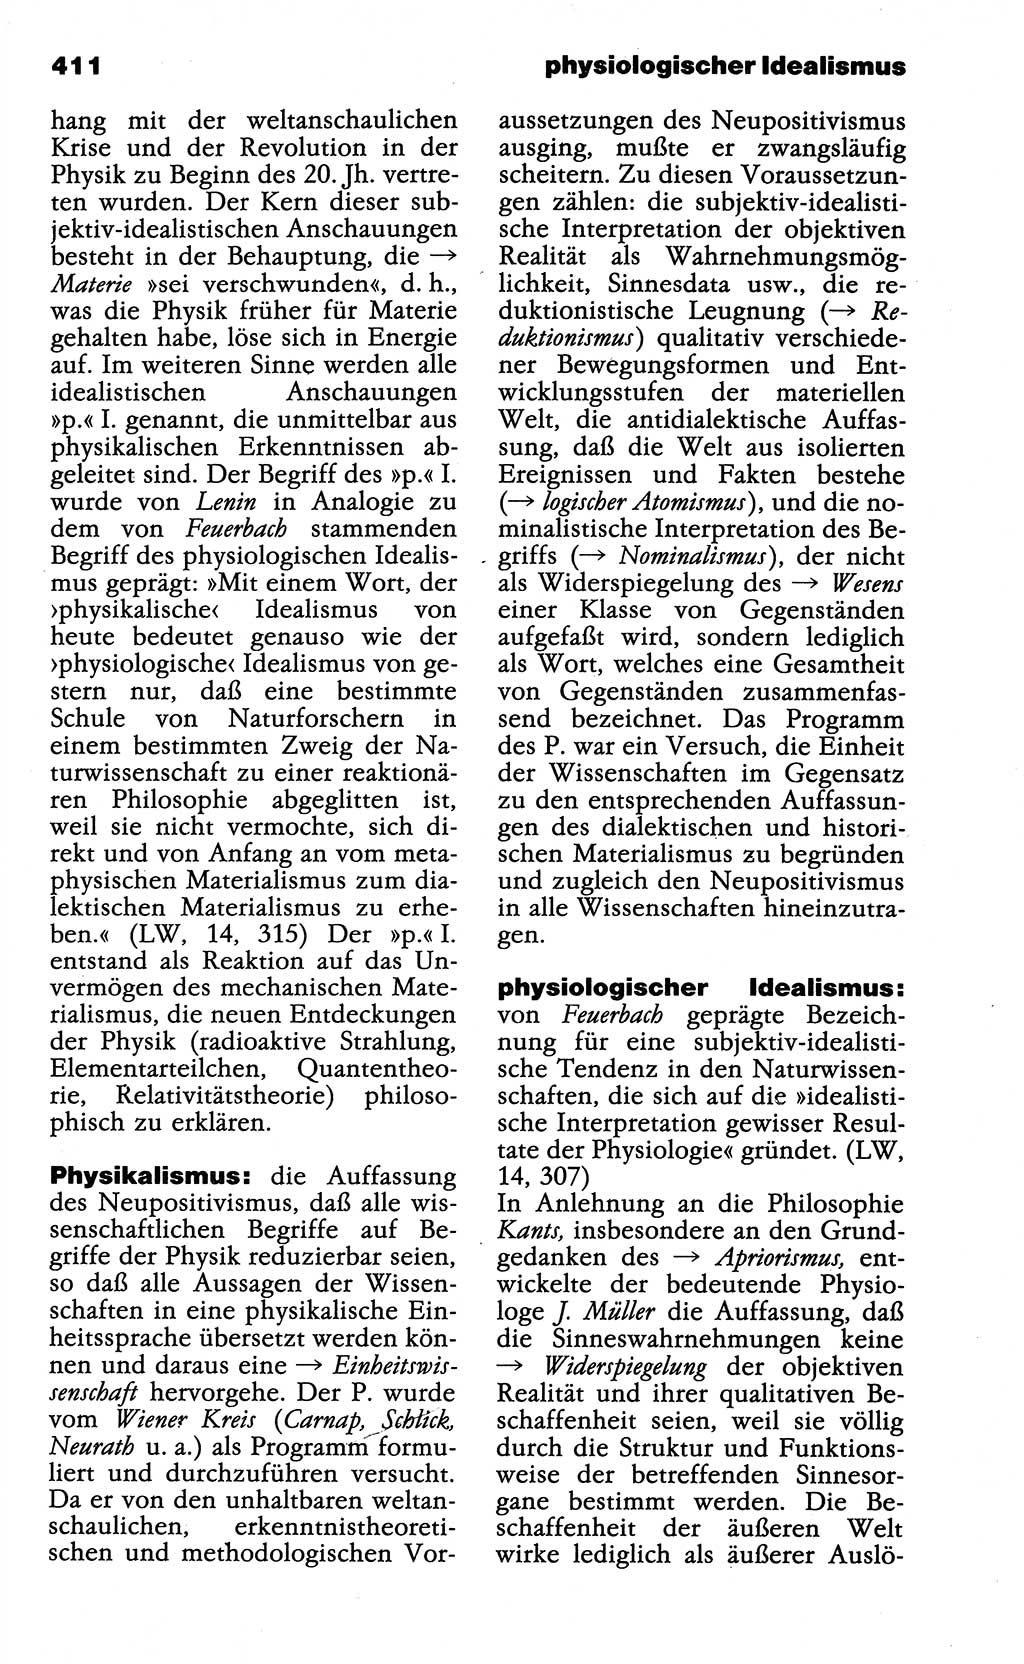 Wörterbuch der marxistisch-leninistischen Philosophie [Deutsche Demokratische Republik (DDR)] 1985, Seite 411 (Wb. ML Phil. DDR 1985, S. 411)